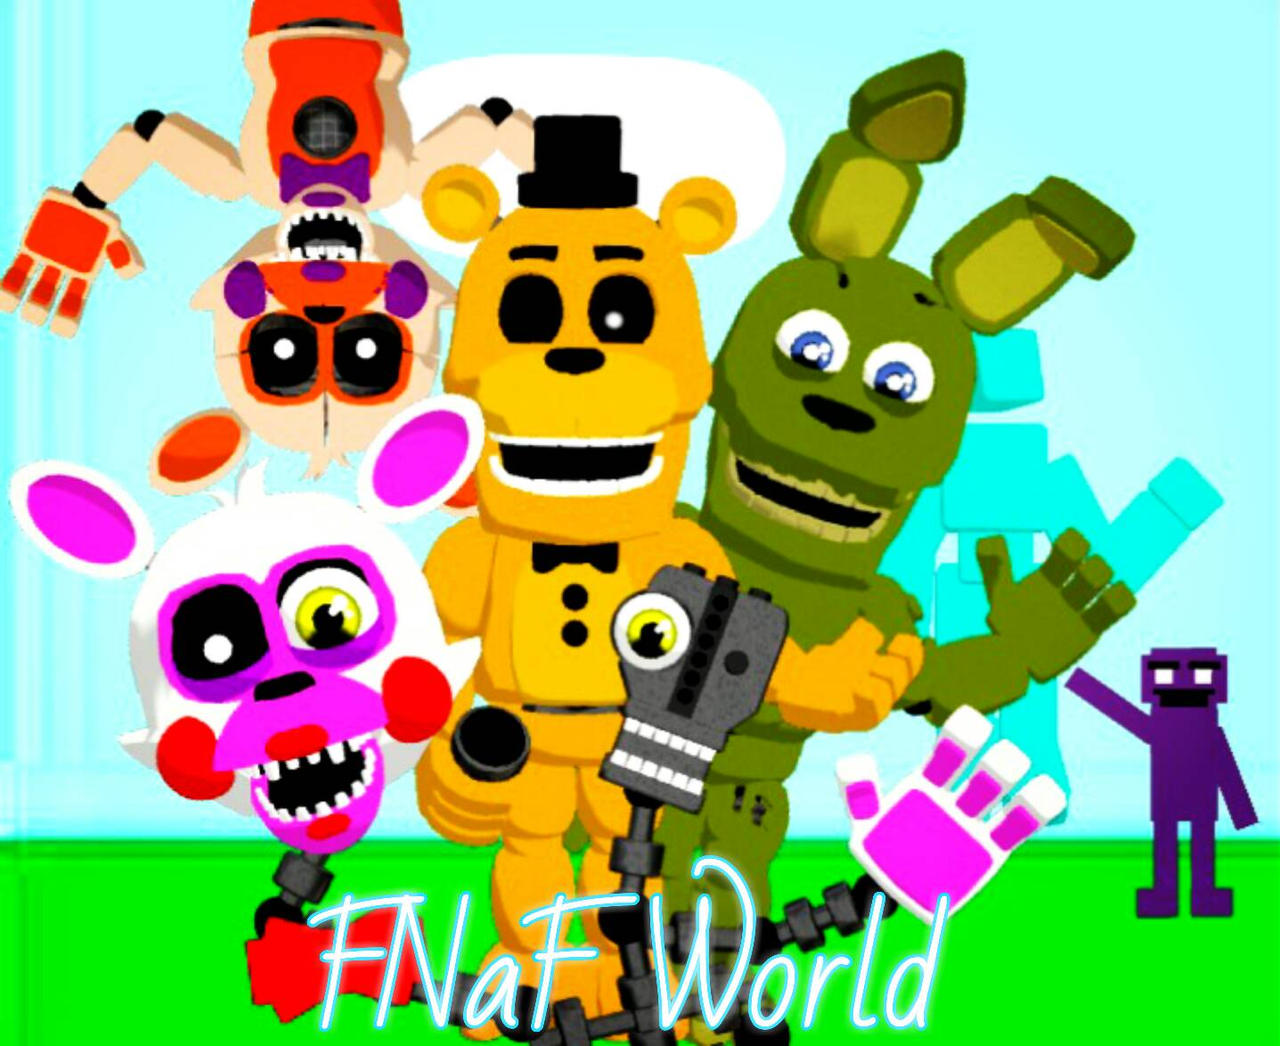 Download Fnaf World Mmd - Colaboratory